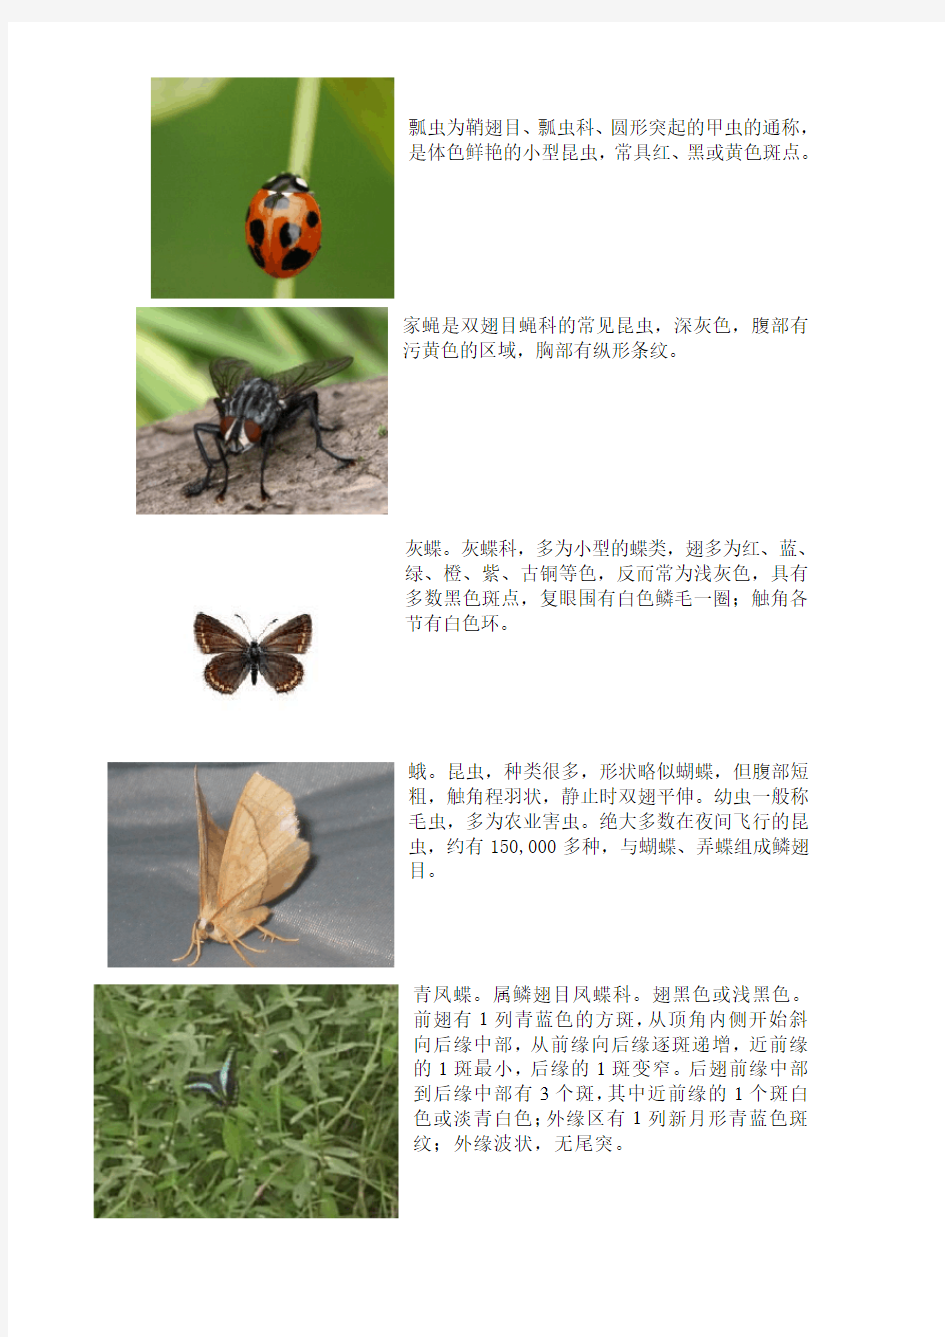 十种昆虫的图文介绍